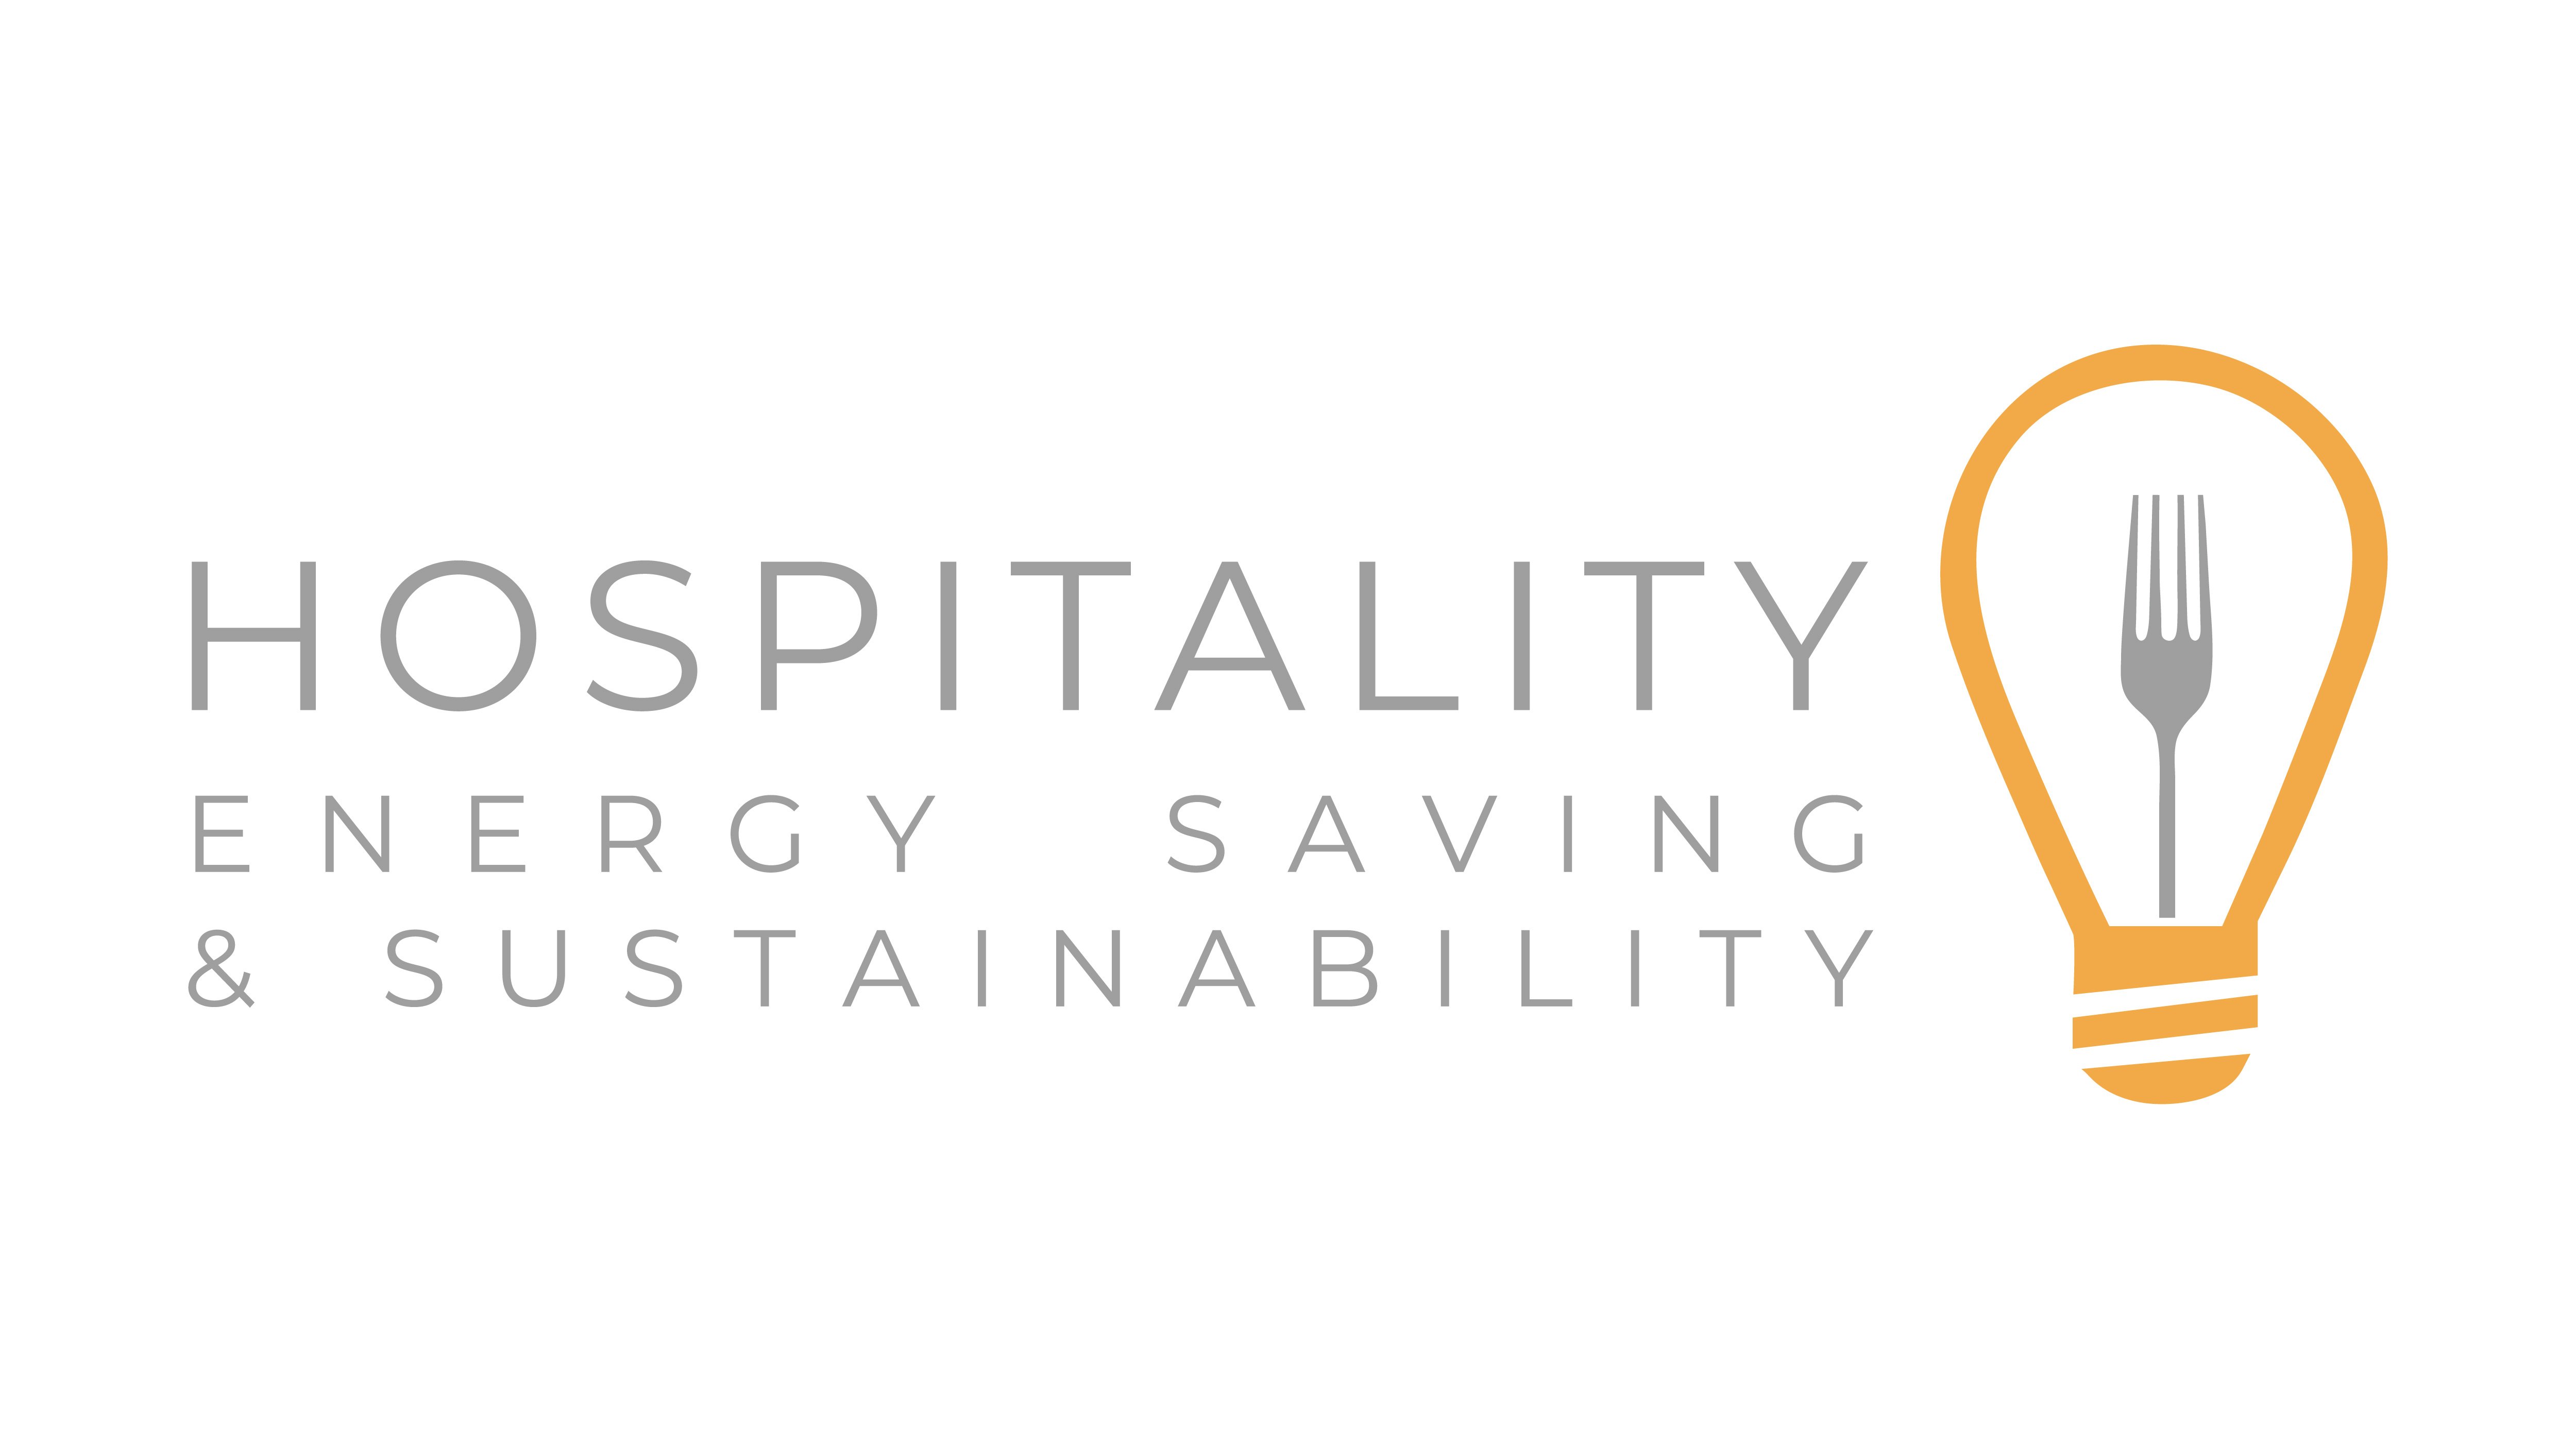 Hospitality Energy Saving & Sustainability logo on a white backgground.